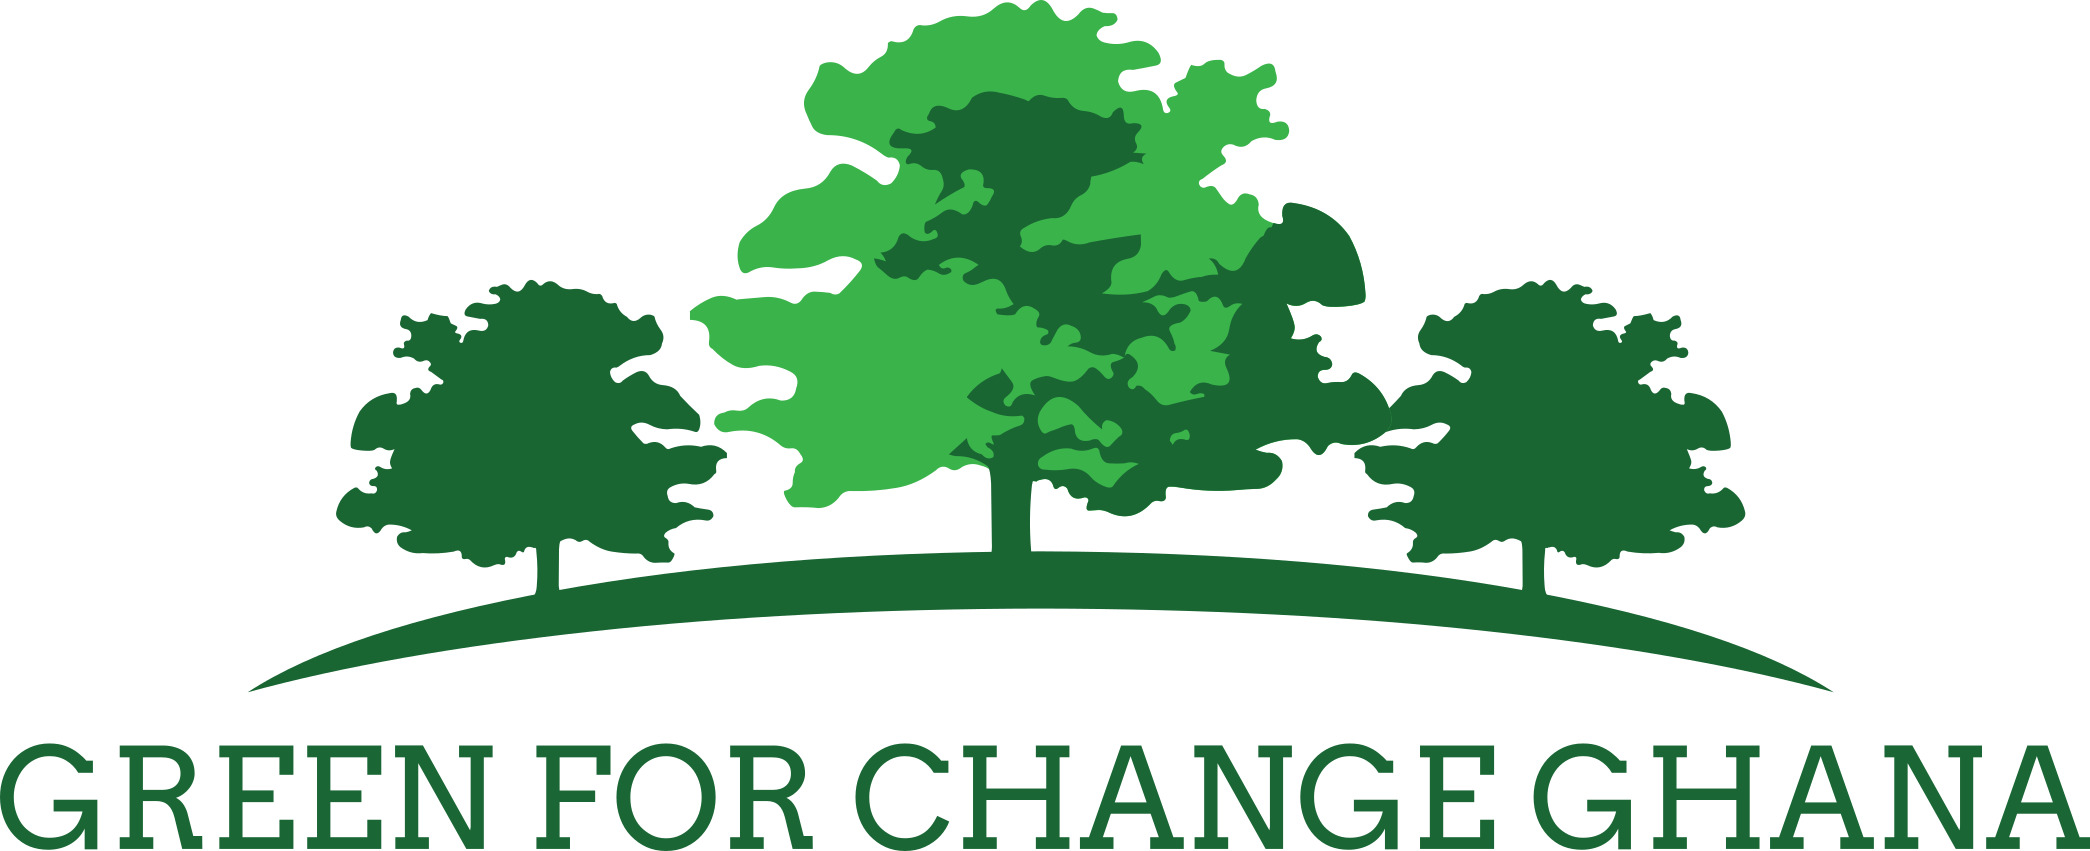 Green for Change Ghana logo